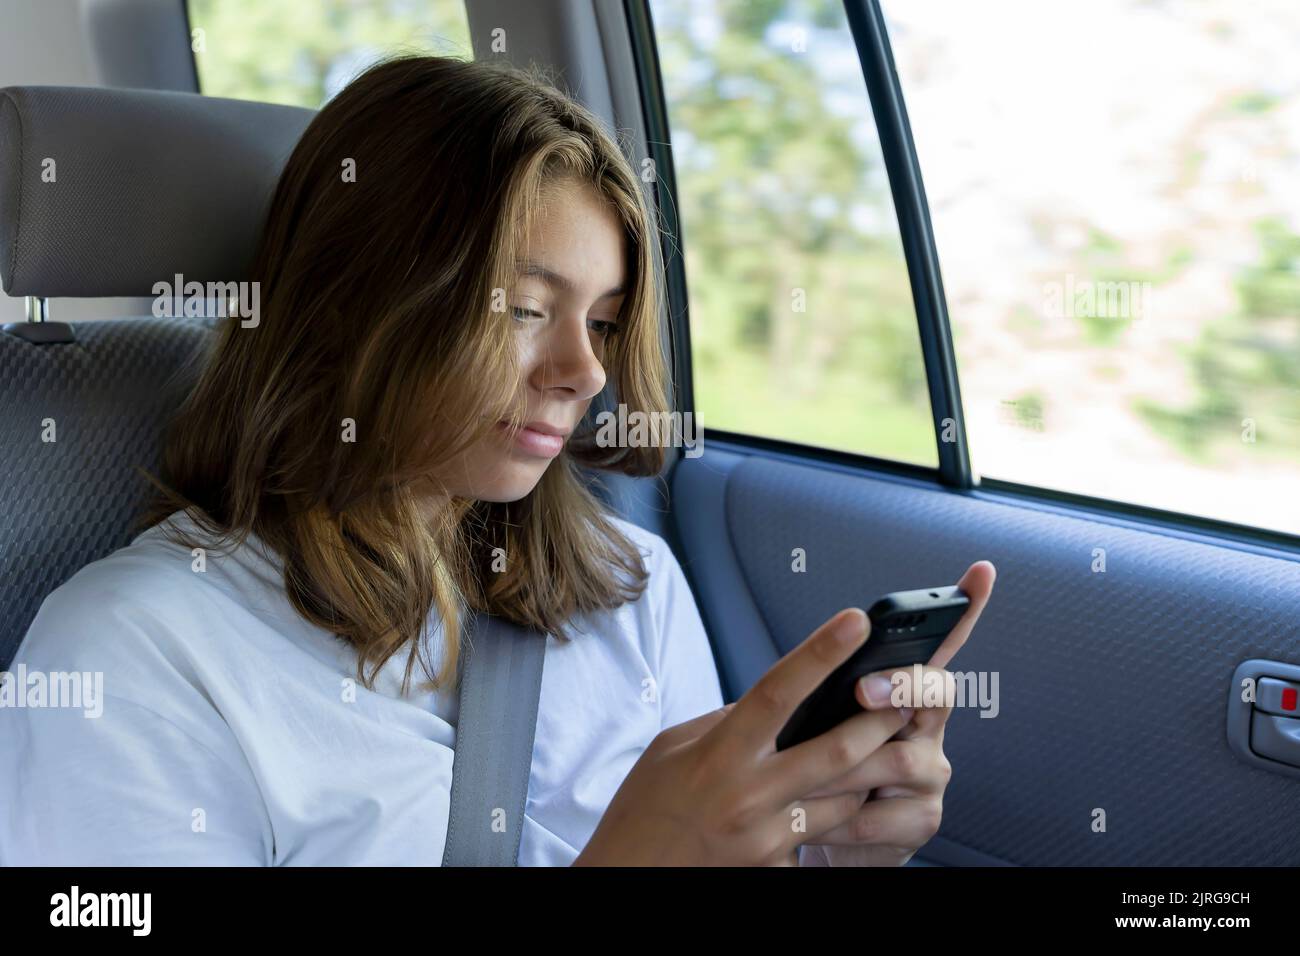 une jeune fille est à cheval dans le siège arrière d'une voiture et utilise un smartphone Banque D'Images